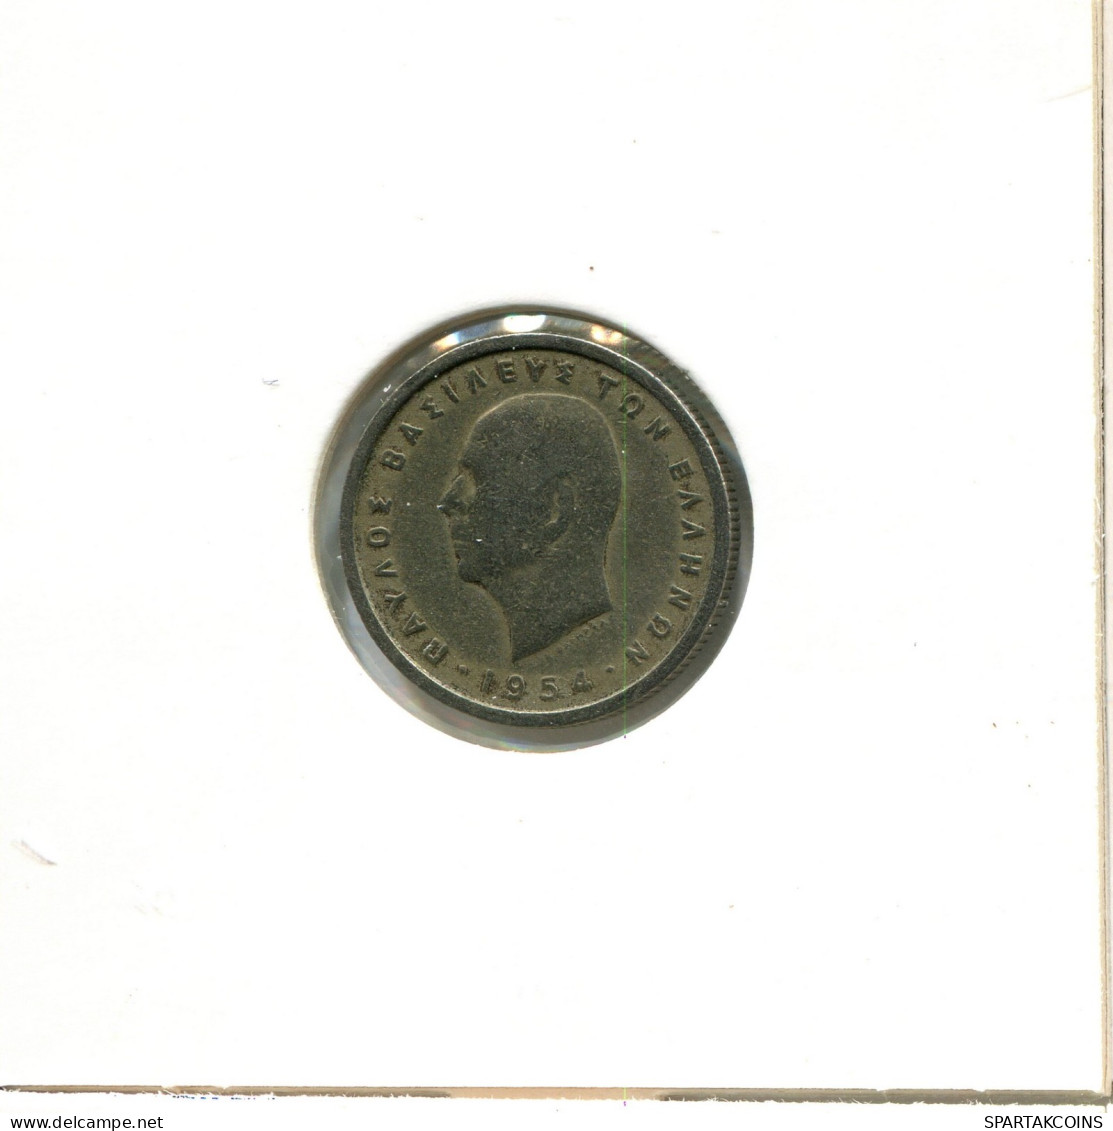 50 LEPTA 1954 GRECIA GREECE Moneda #AW550.E.A - Grecia